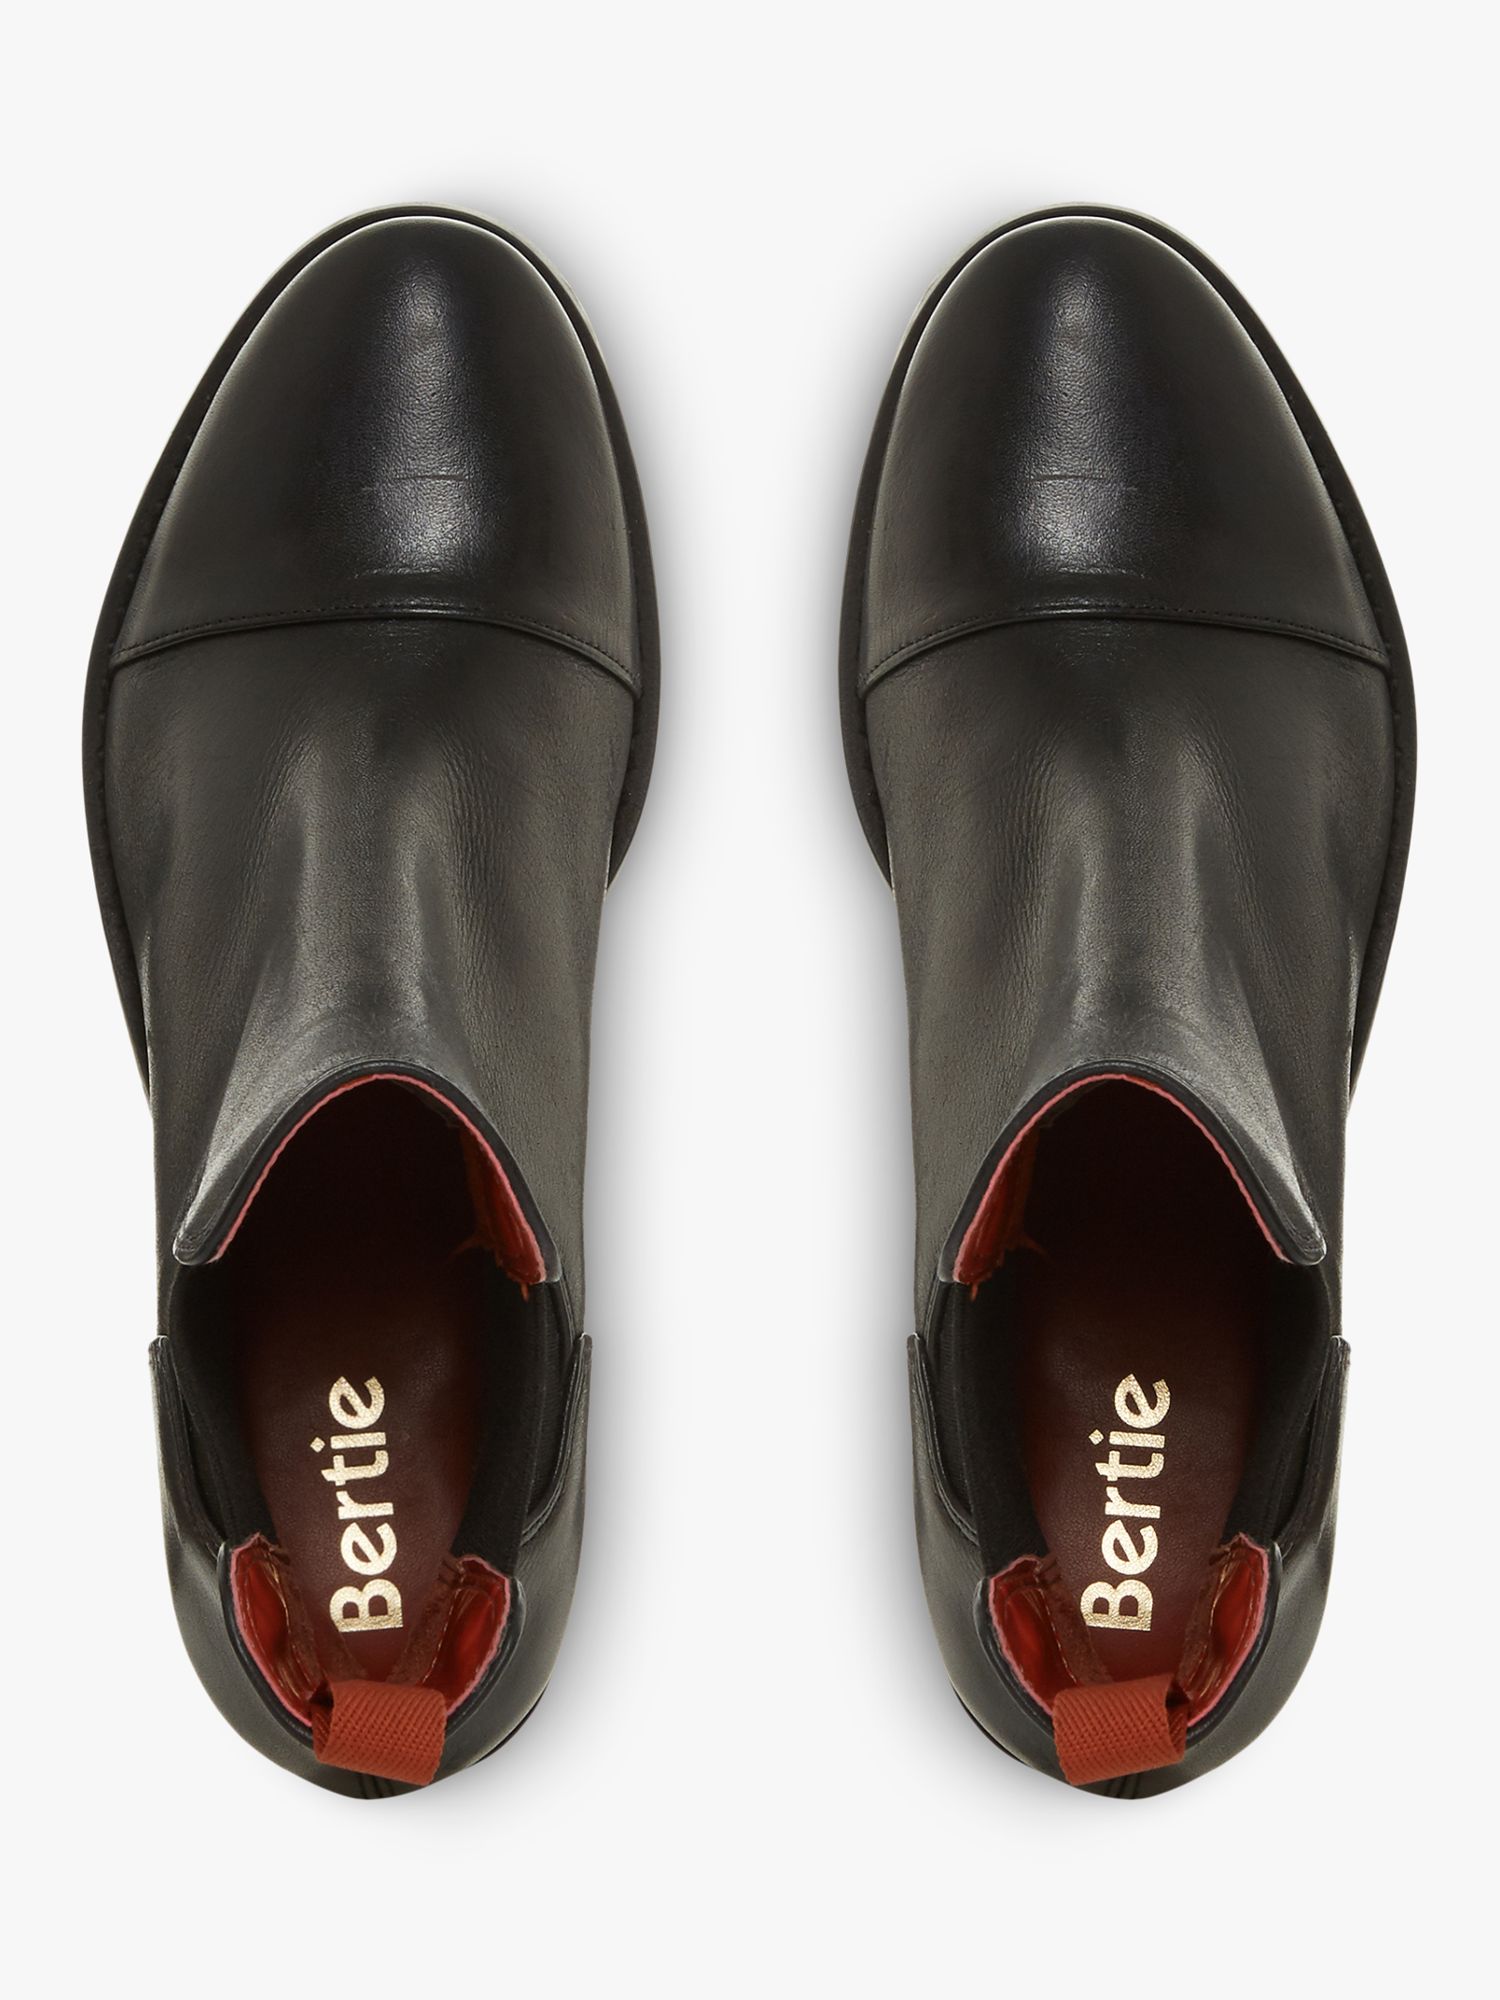 bertie womens shoes online